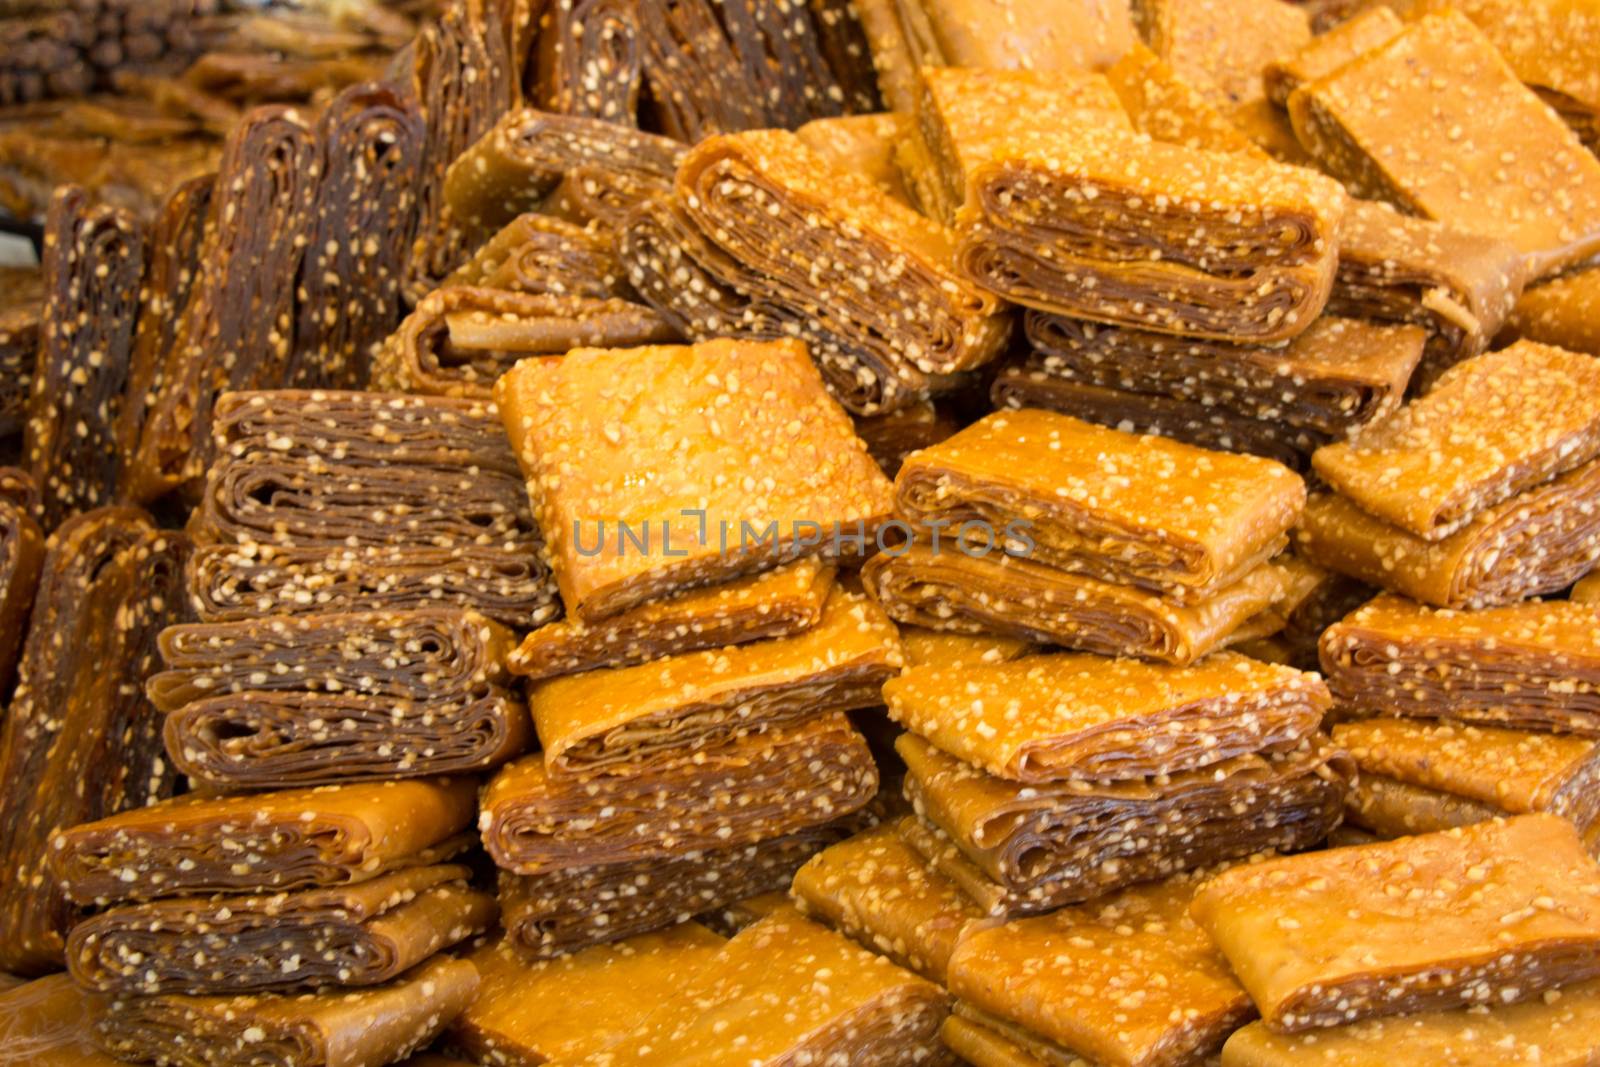 Fruit dried pulp as snack food by berkay